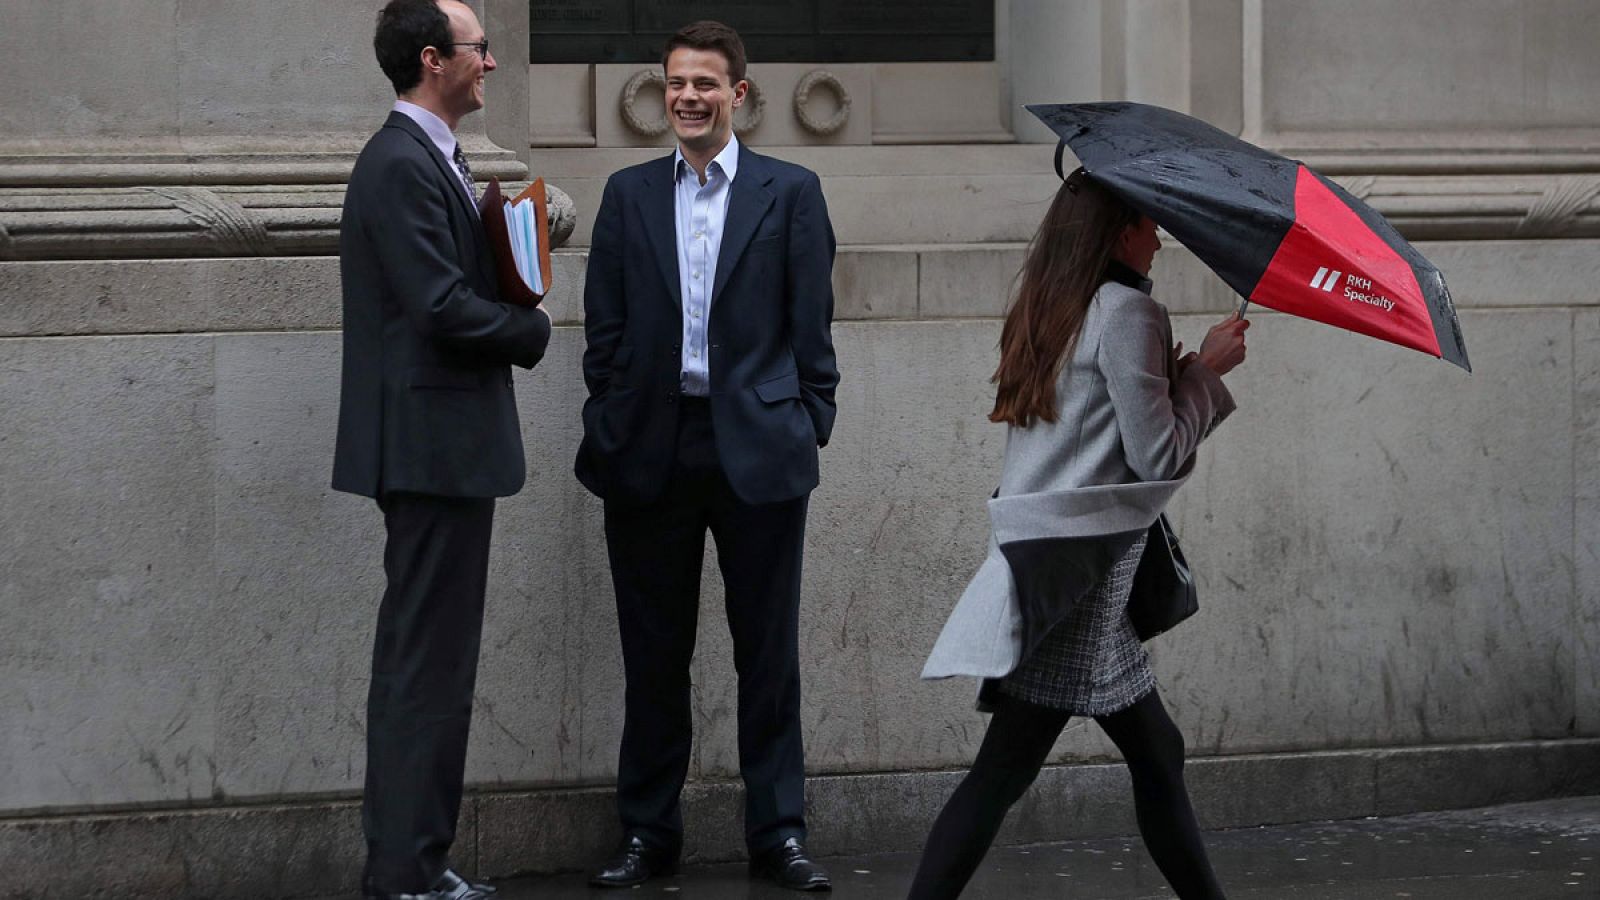 Una mujer se protege con un paraguas mientras camina junto a dos hombres en la City londinense